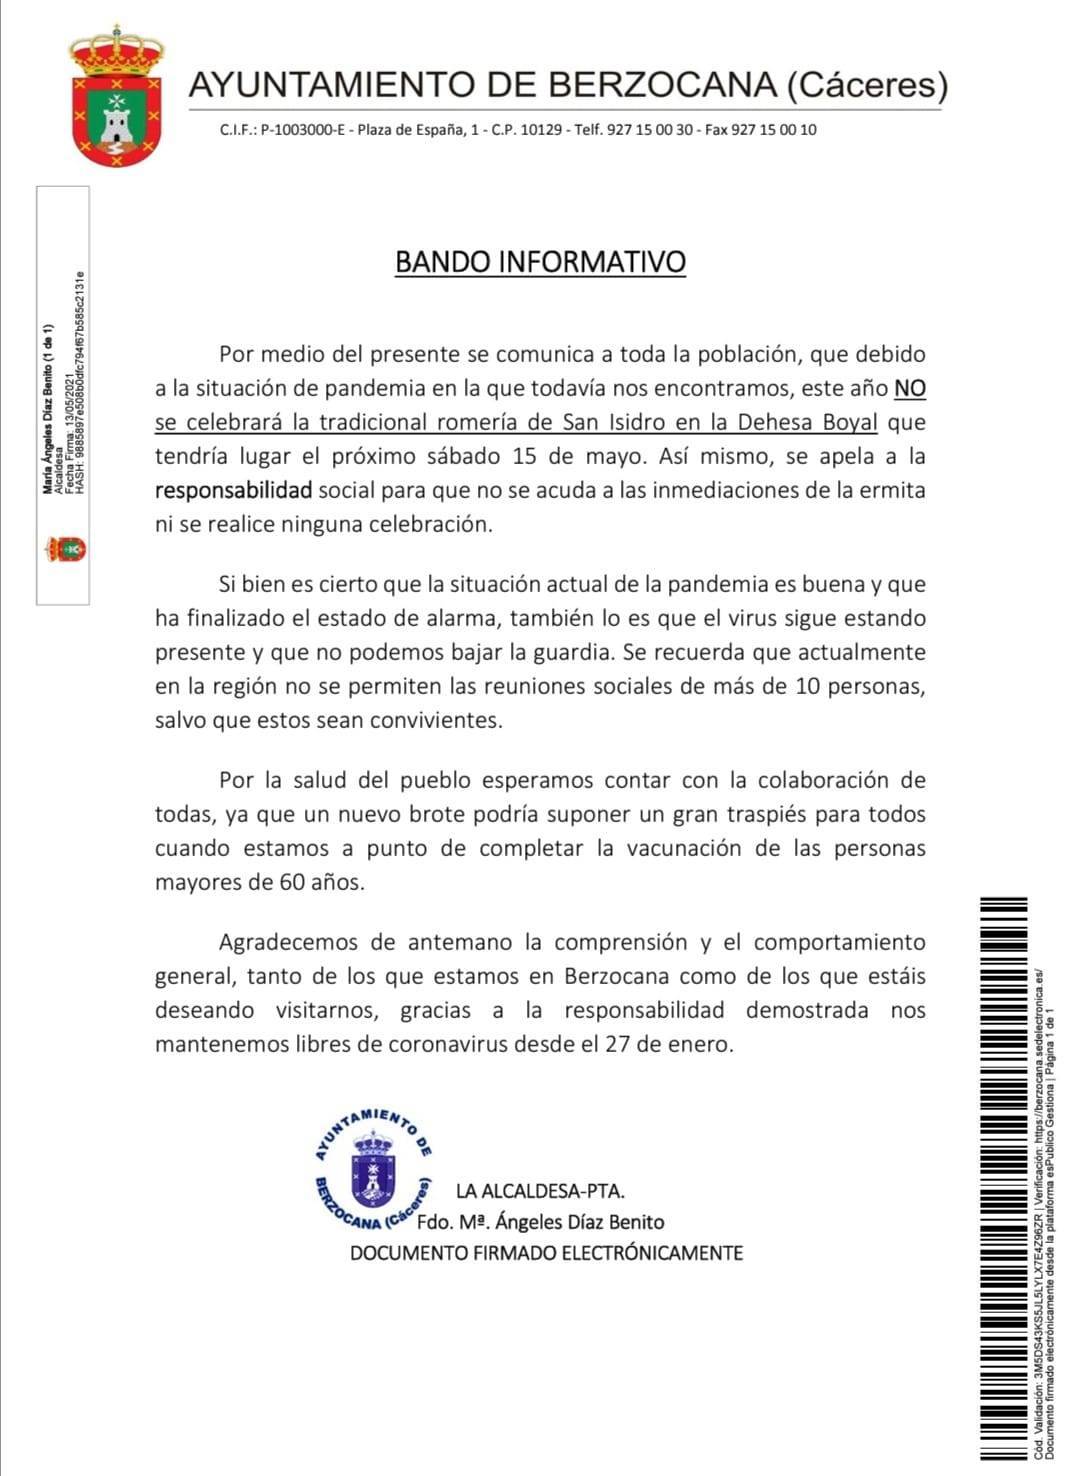 No se celebrará la romería de San Isidro (2021) - Berzocana (Cáceres)